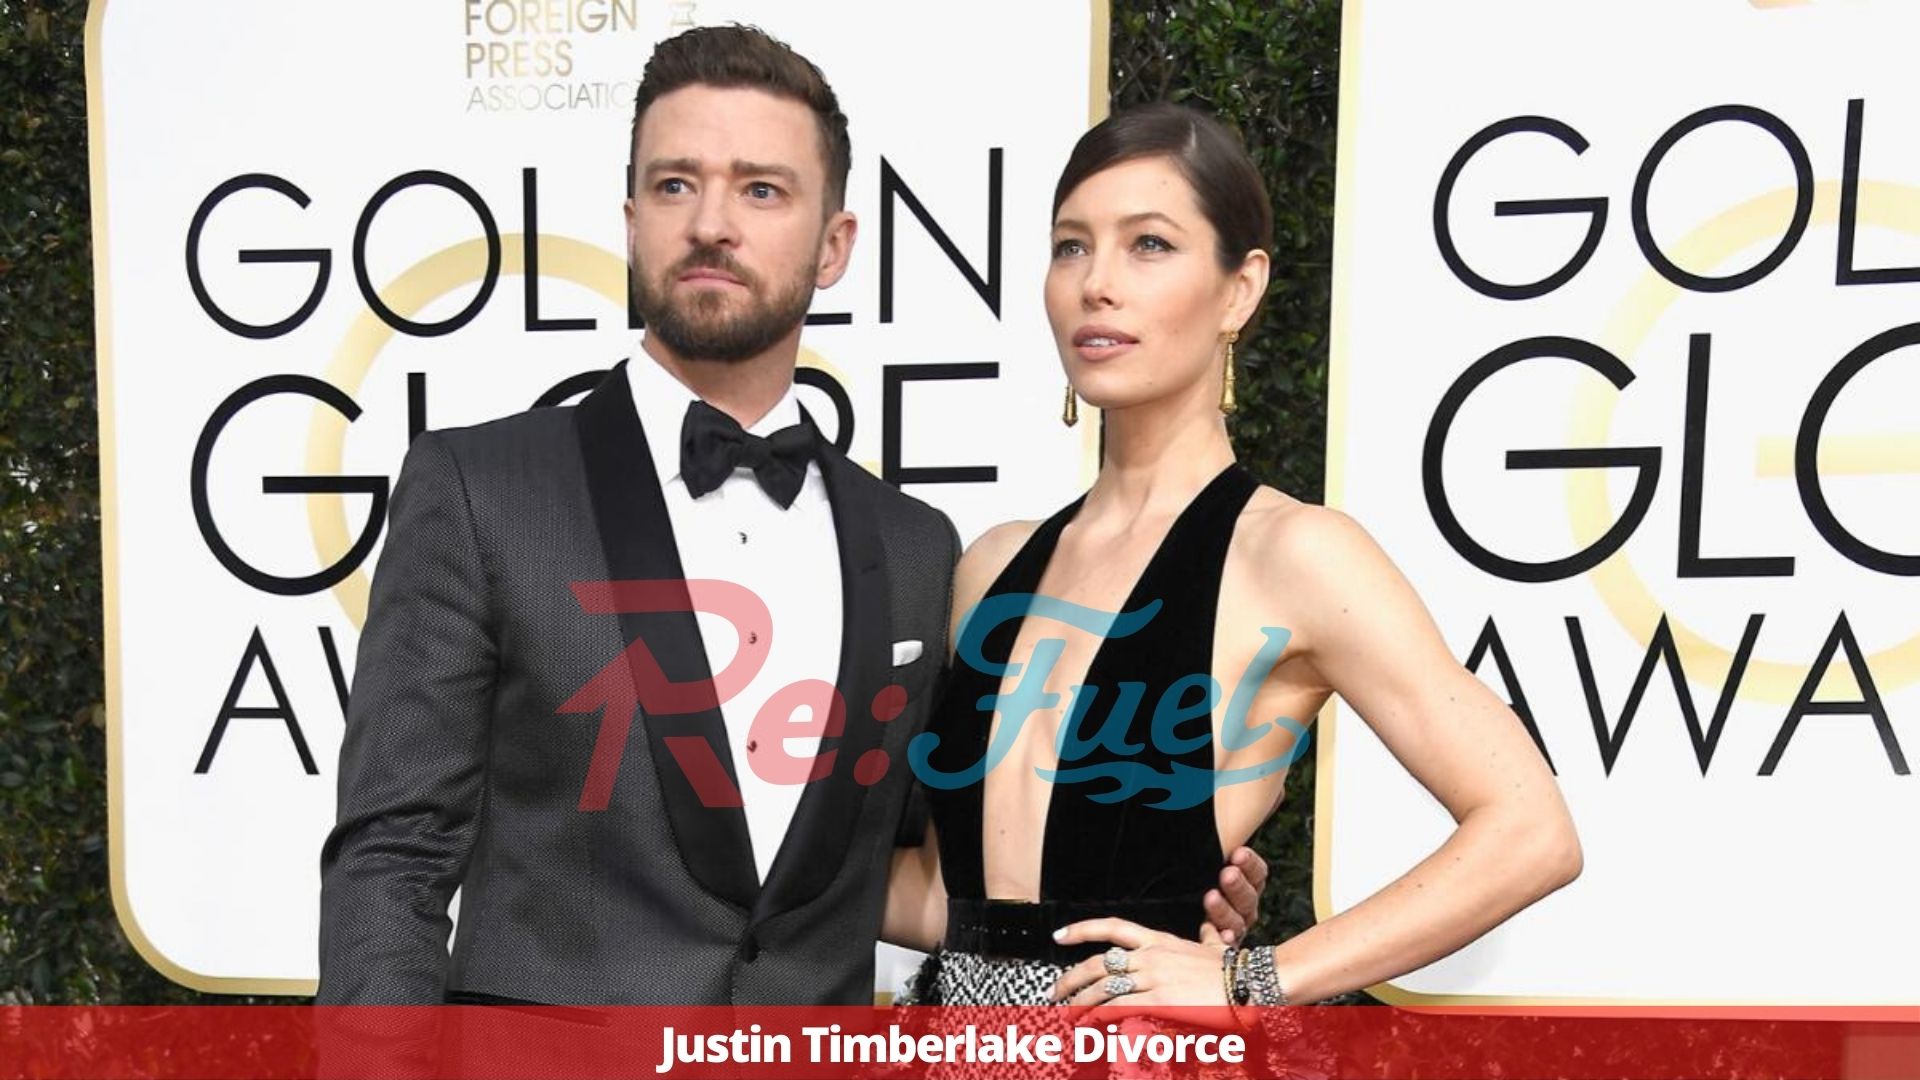 Justin Timberlake Divorce